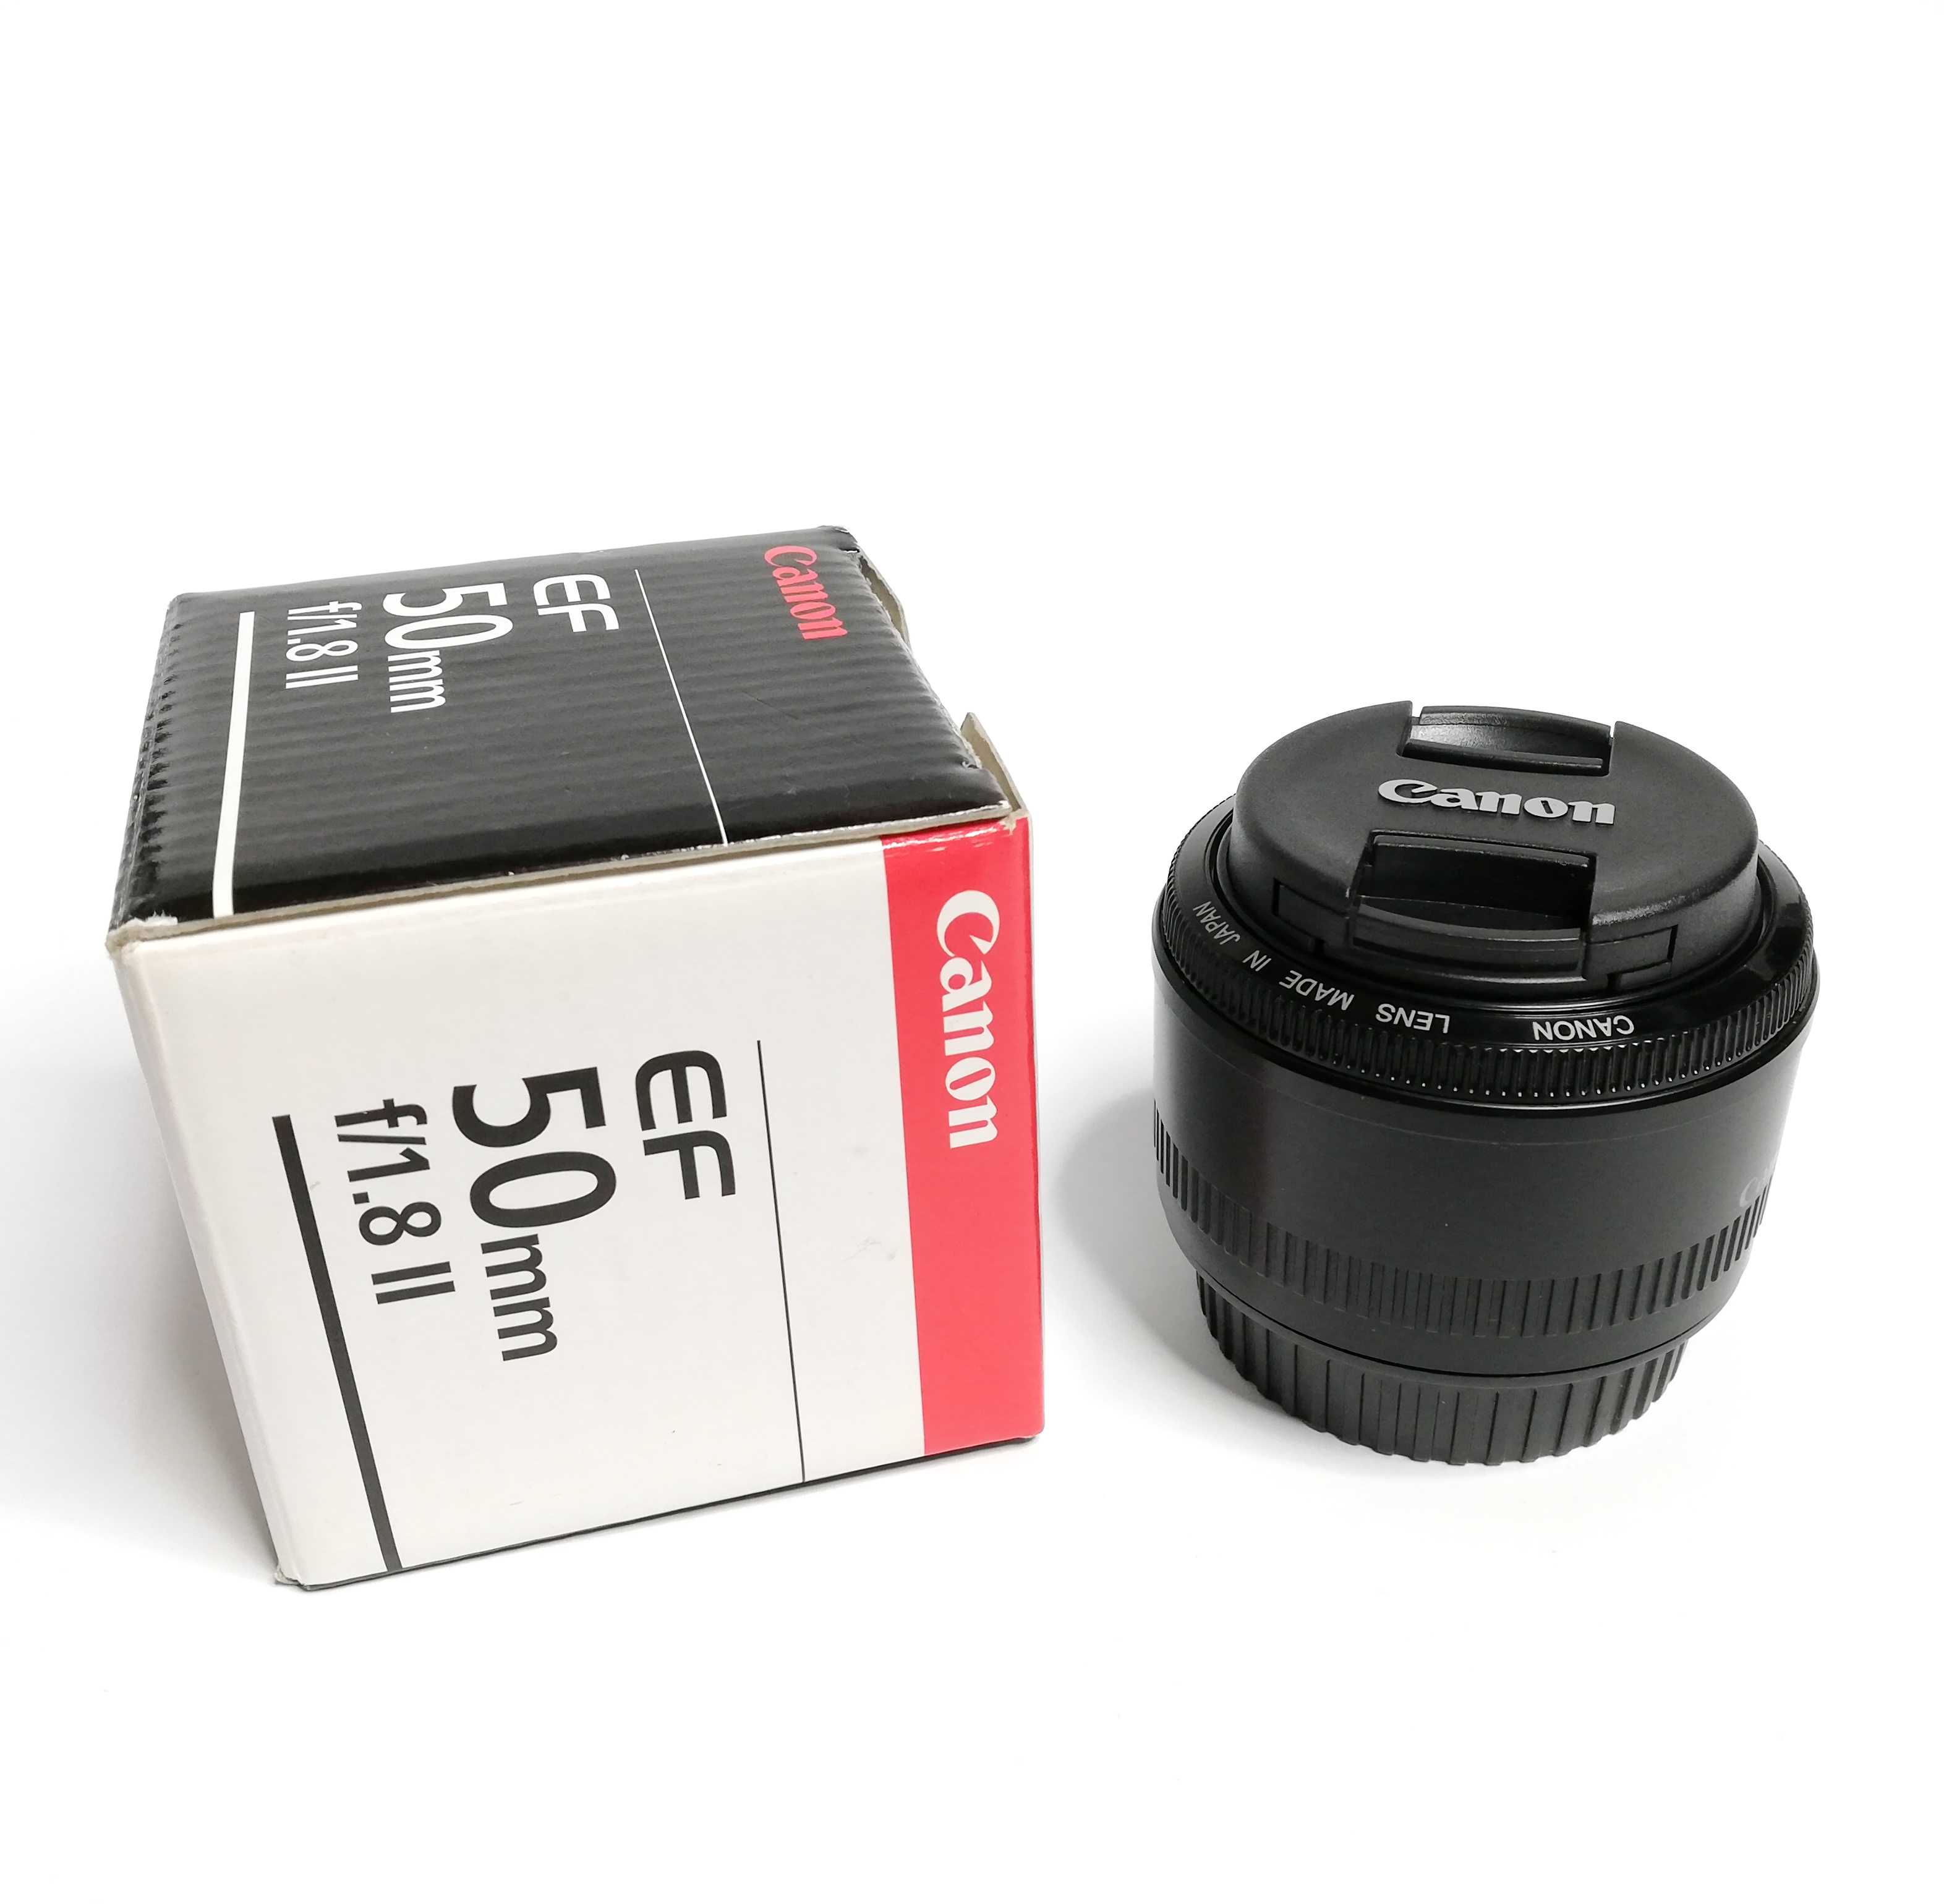 Canon EF 50mm f/1.8 II, состояние нового, в полном комплекте